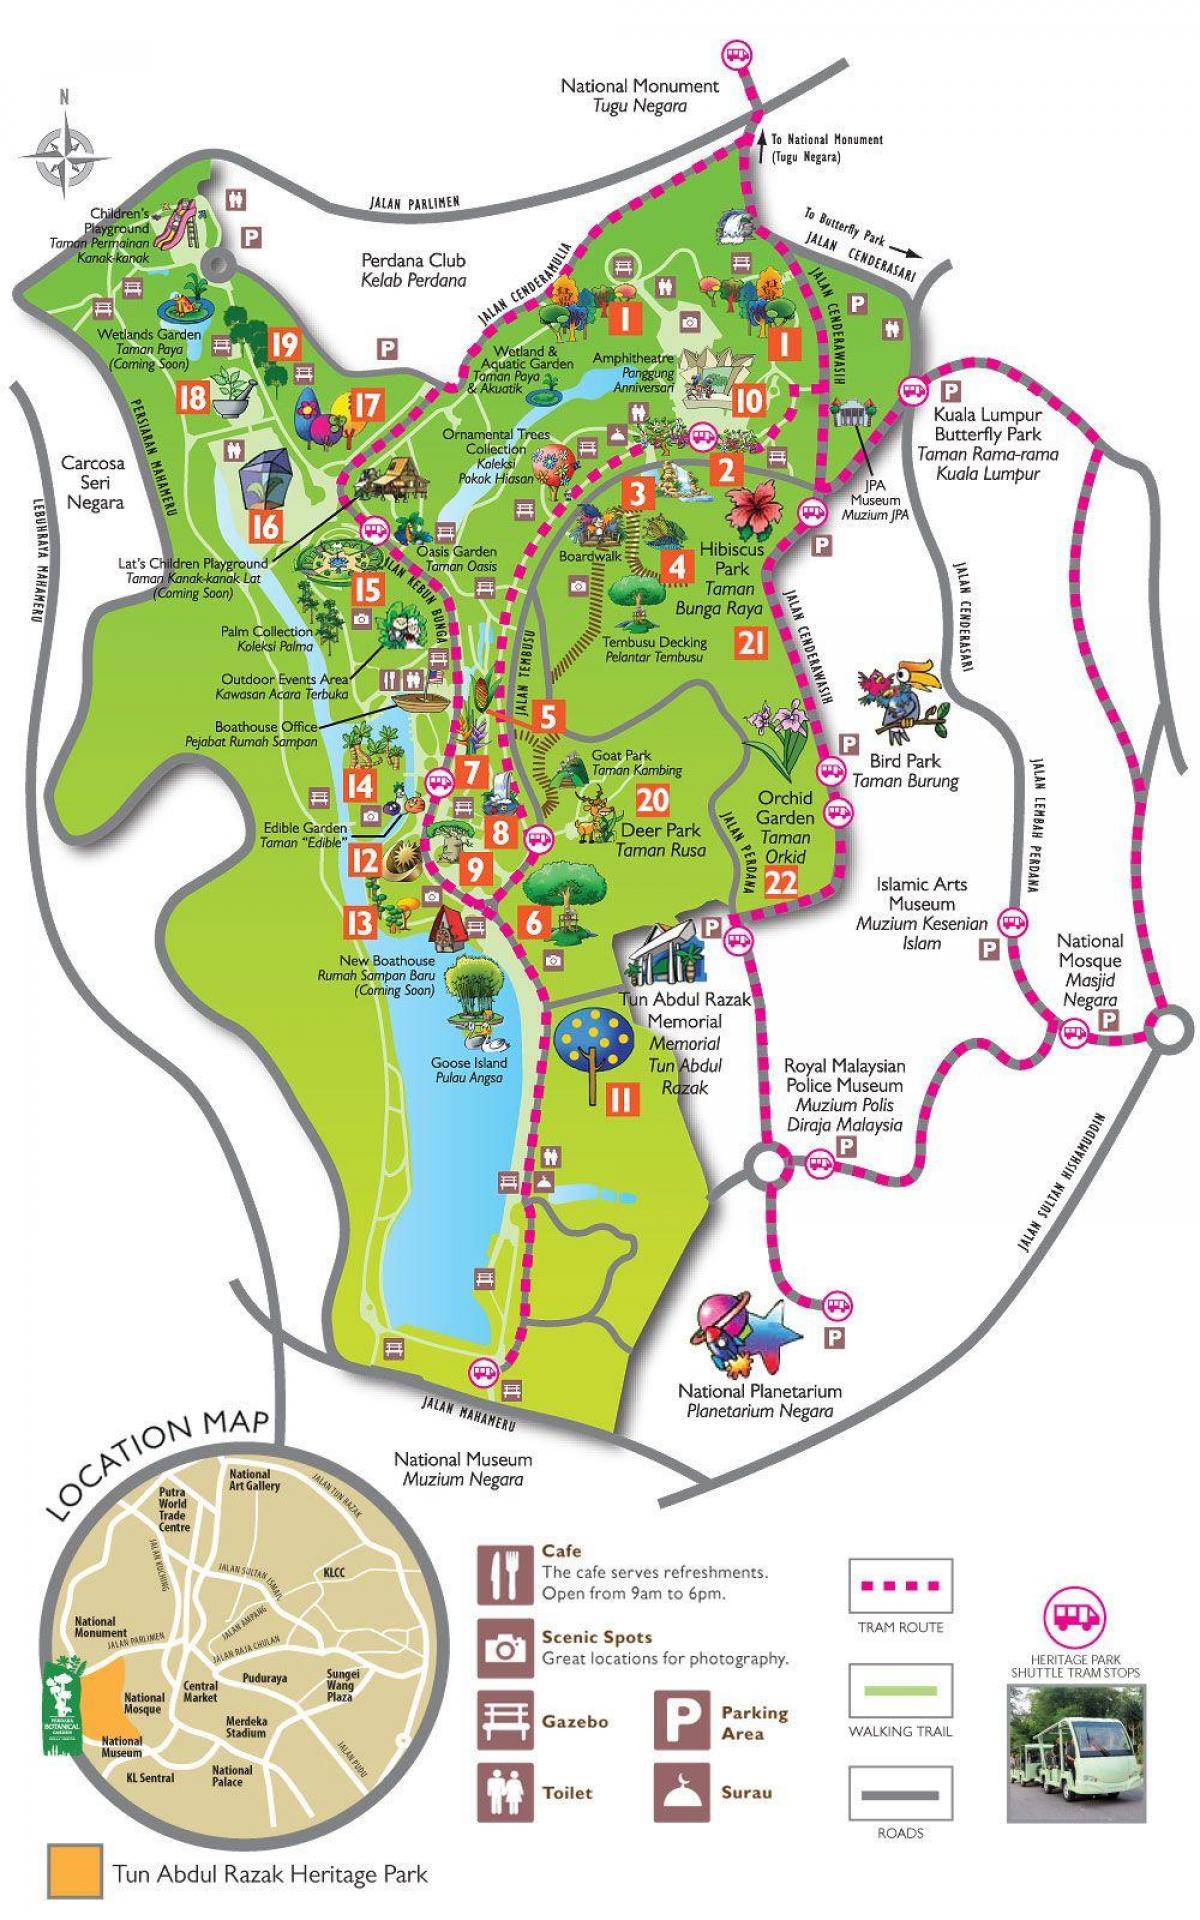 Peta perdana taman botanical